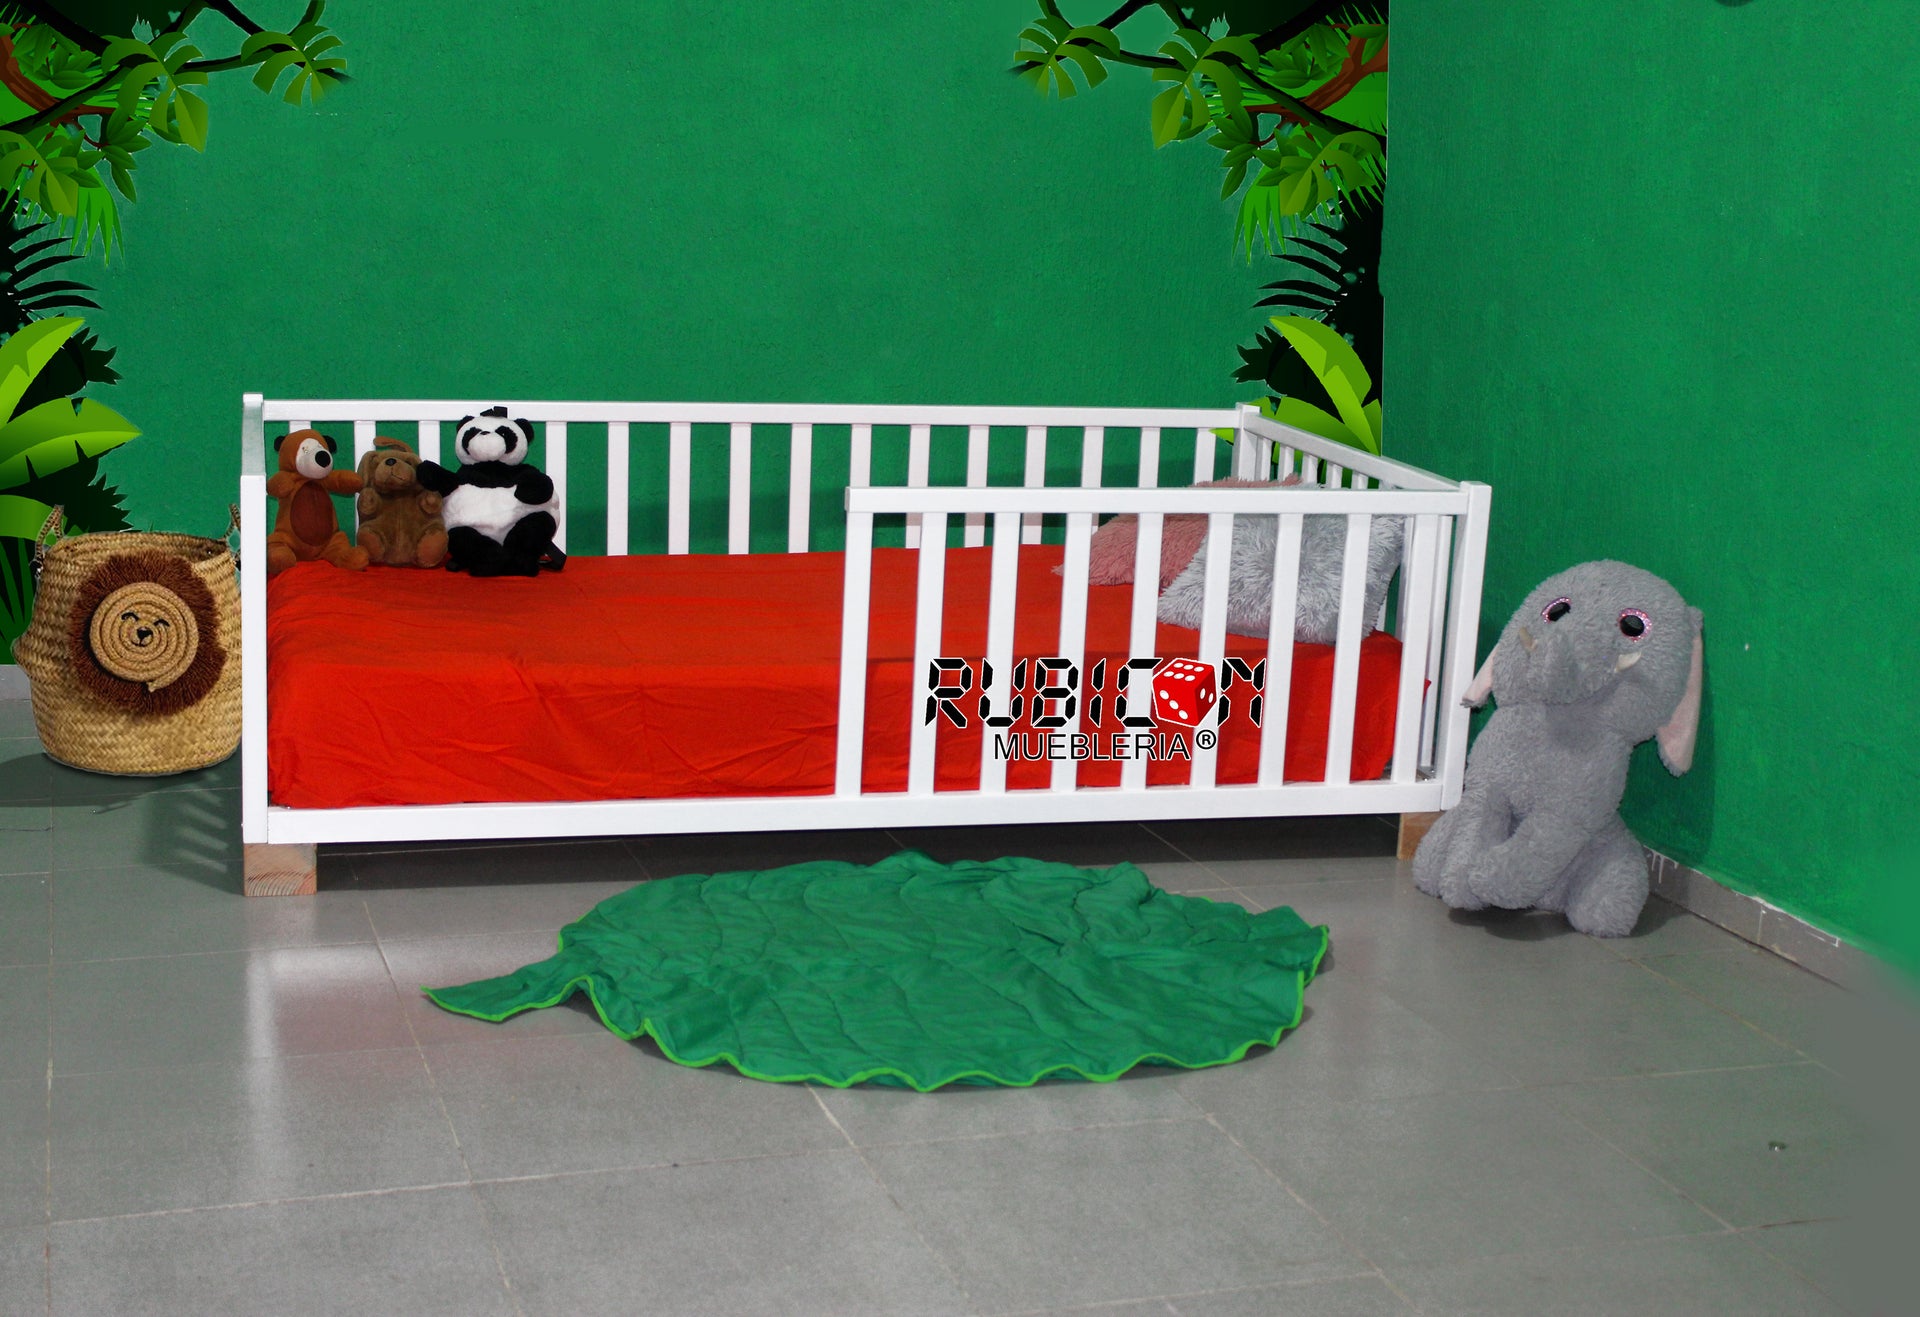 Cama casita Montessori de madera infantil Tipi – Rubicon Mueblería